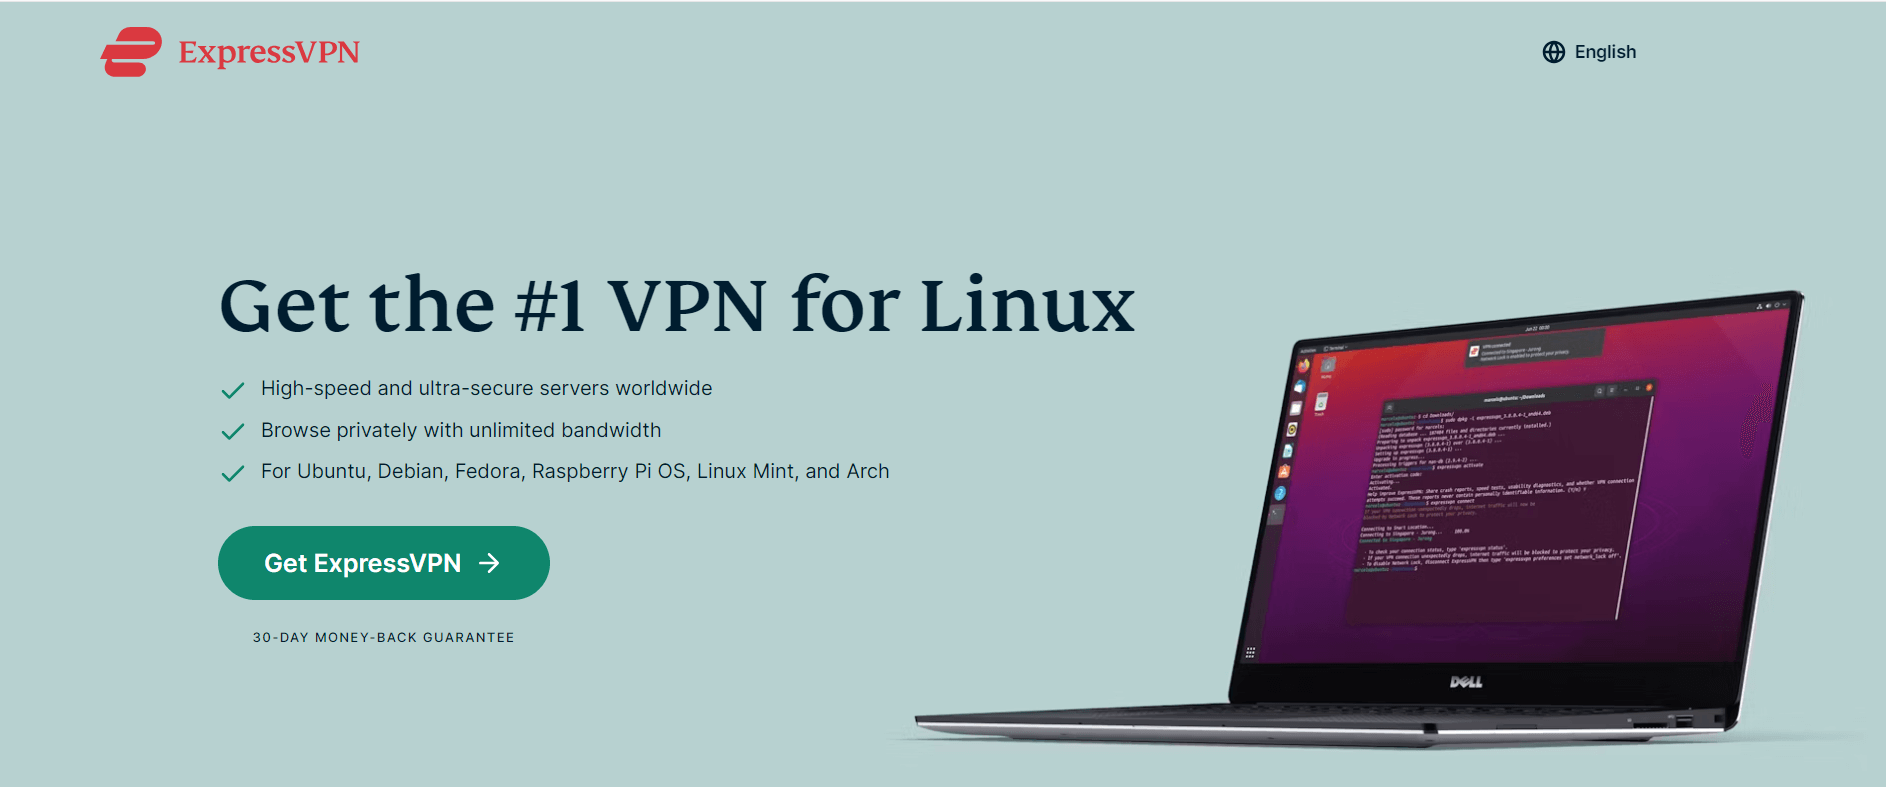 expressvpn-download-linux-in-Germany